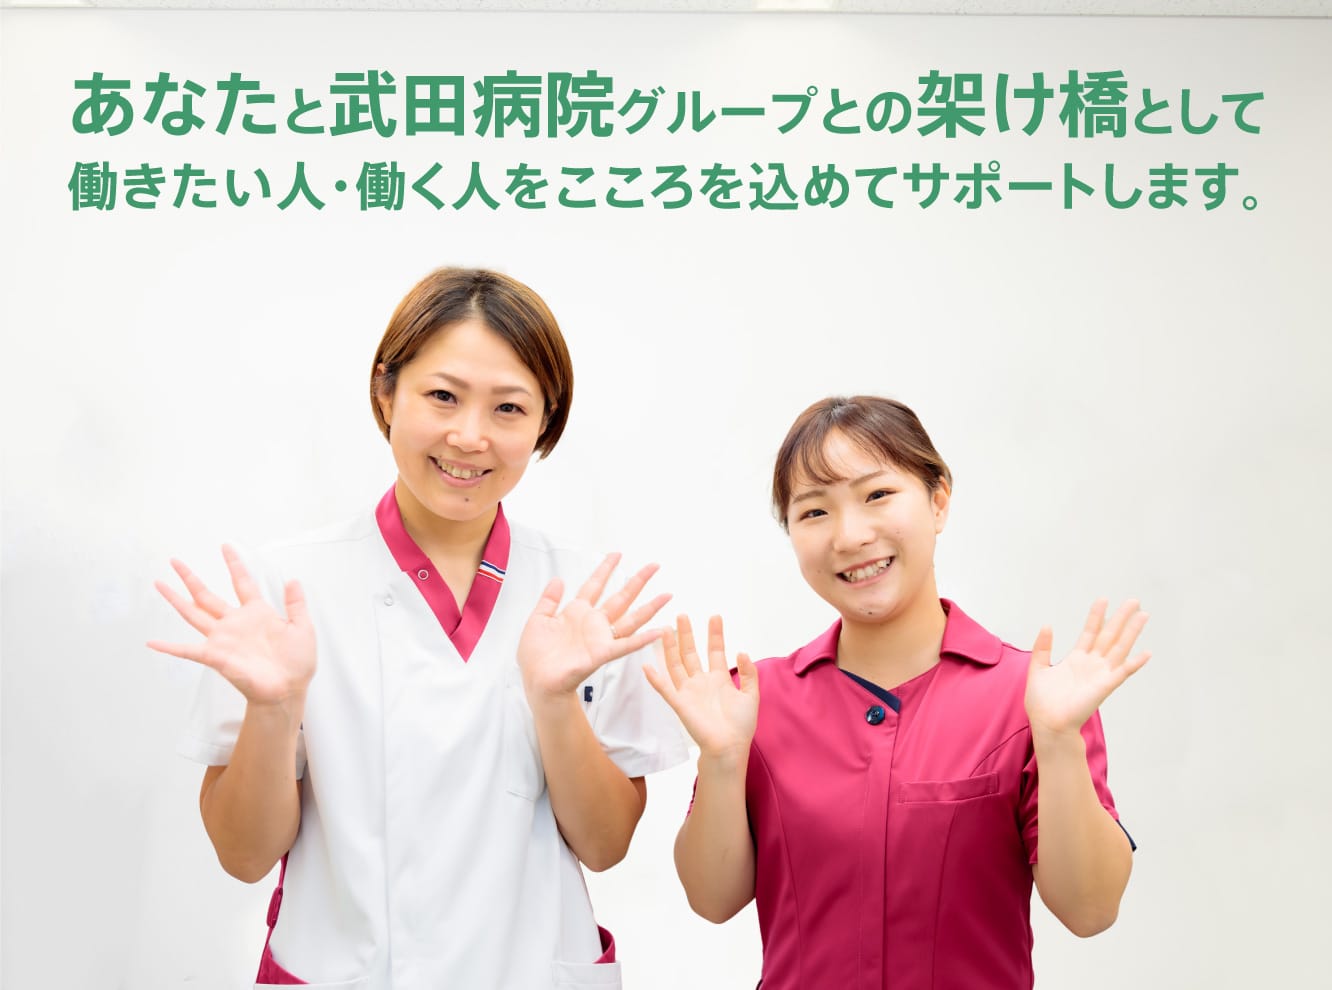 あなたと武田病院グループとの架け橋として働きたい人・働く人をこころを込めてサポートします。